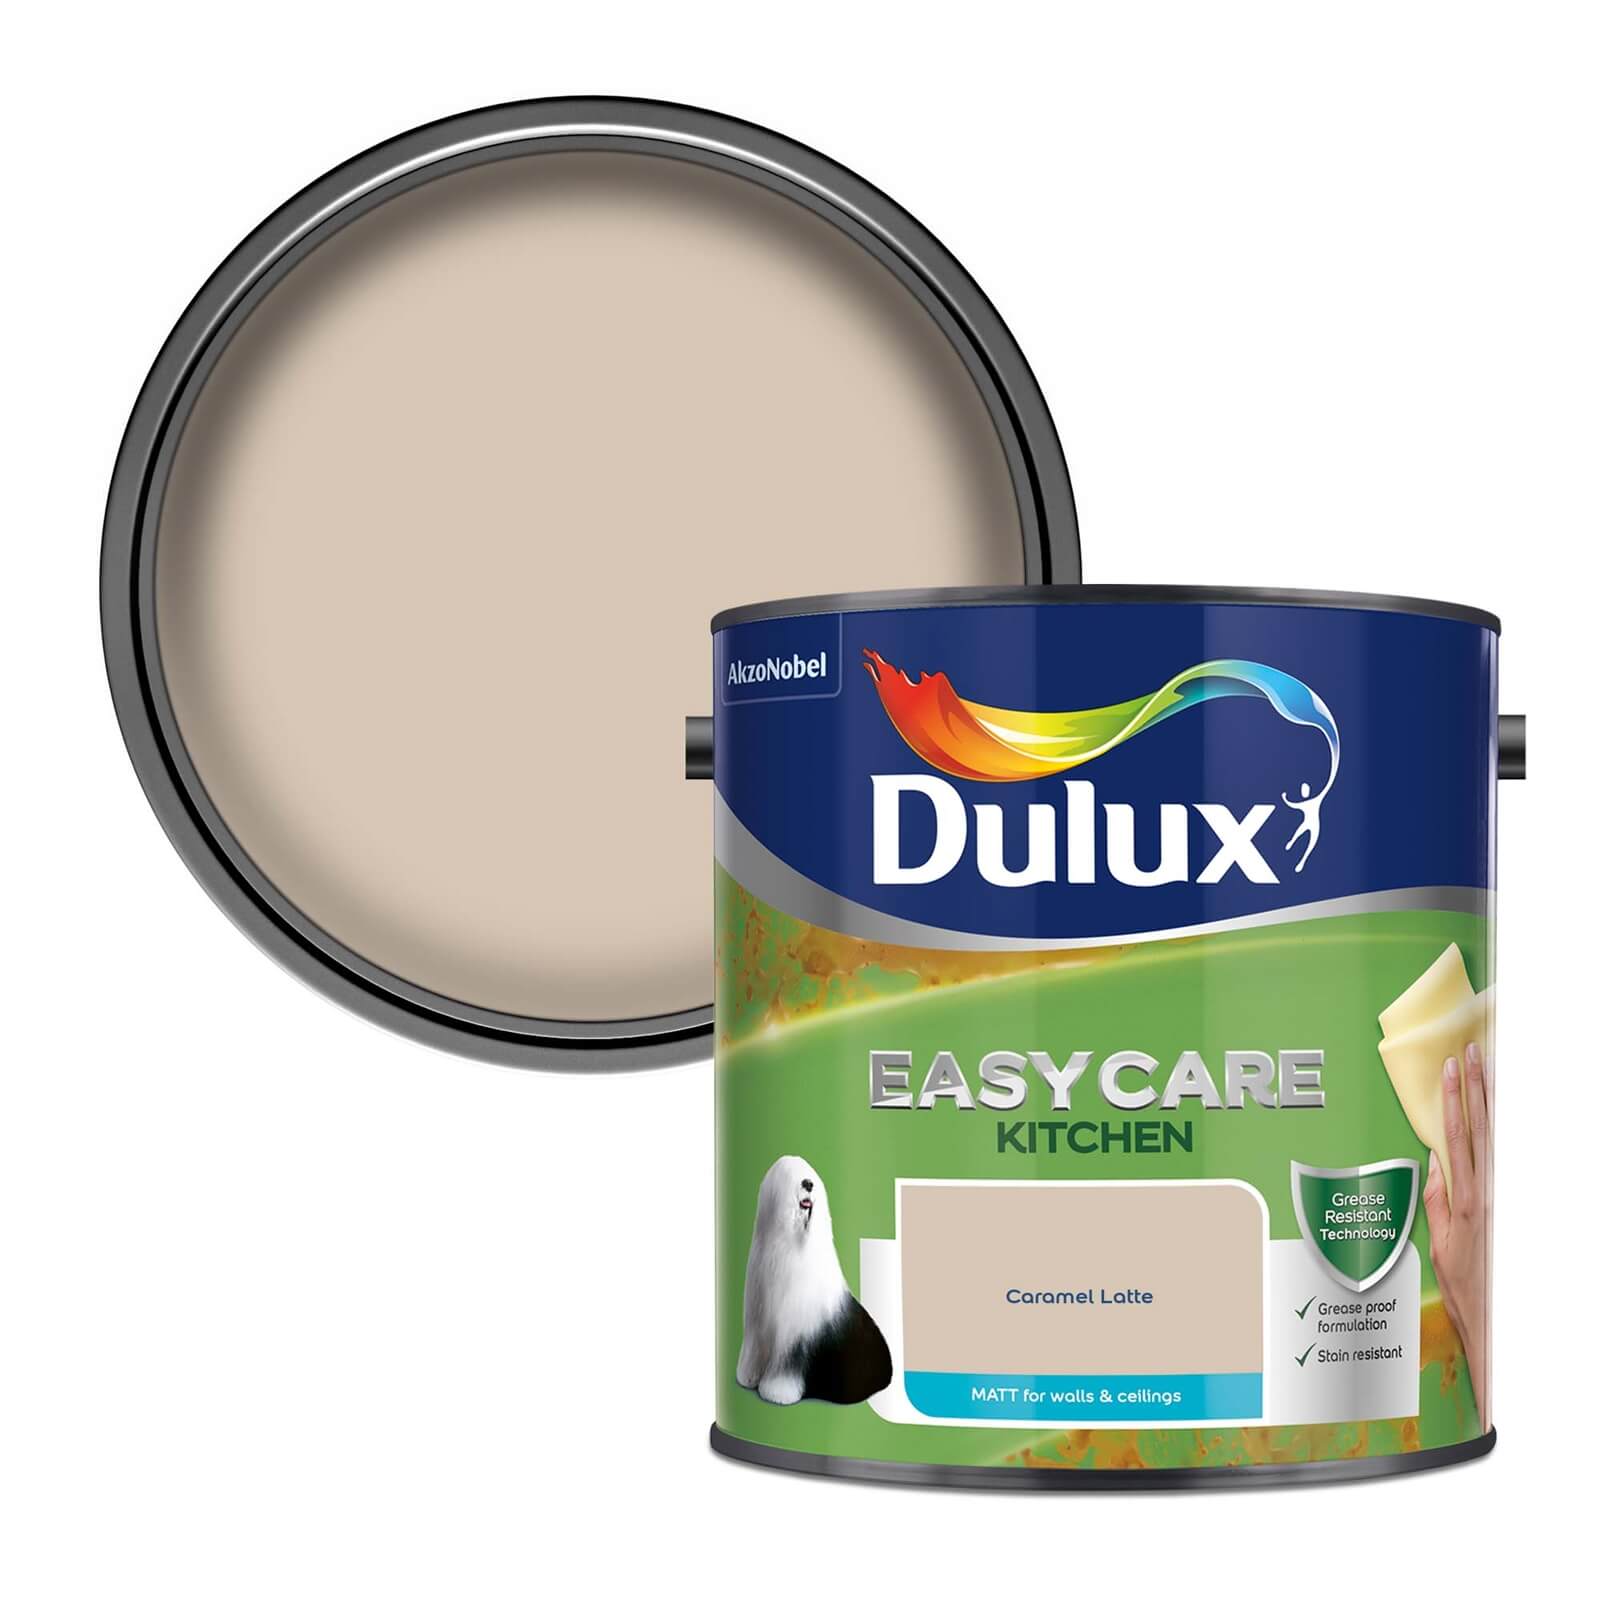 Dulux Easycare Kitchen Caramel Latte Matt Emulsion Paint - 2.5L